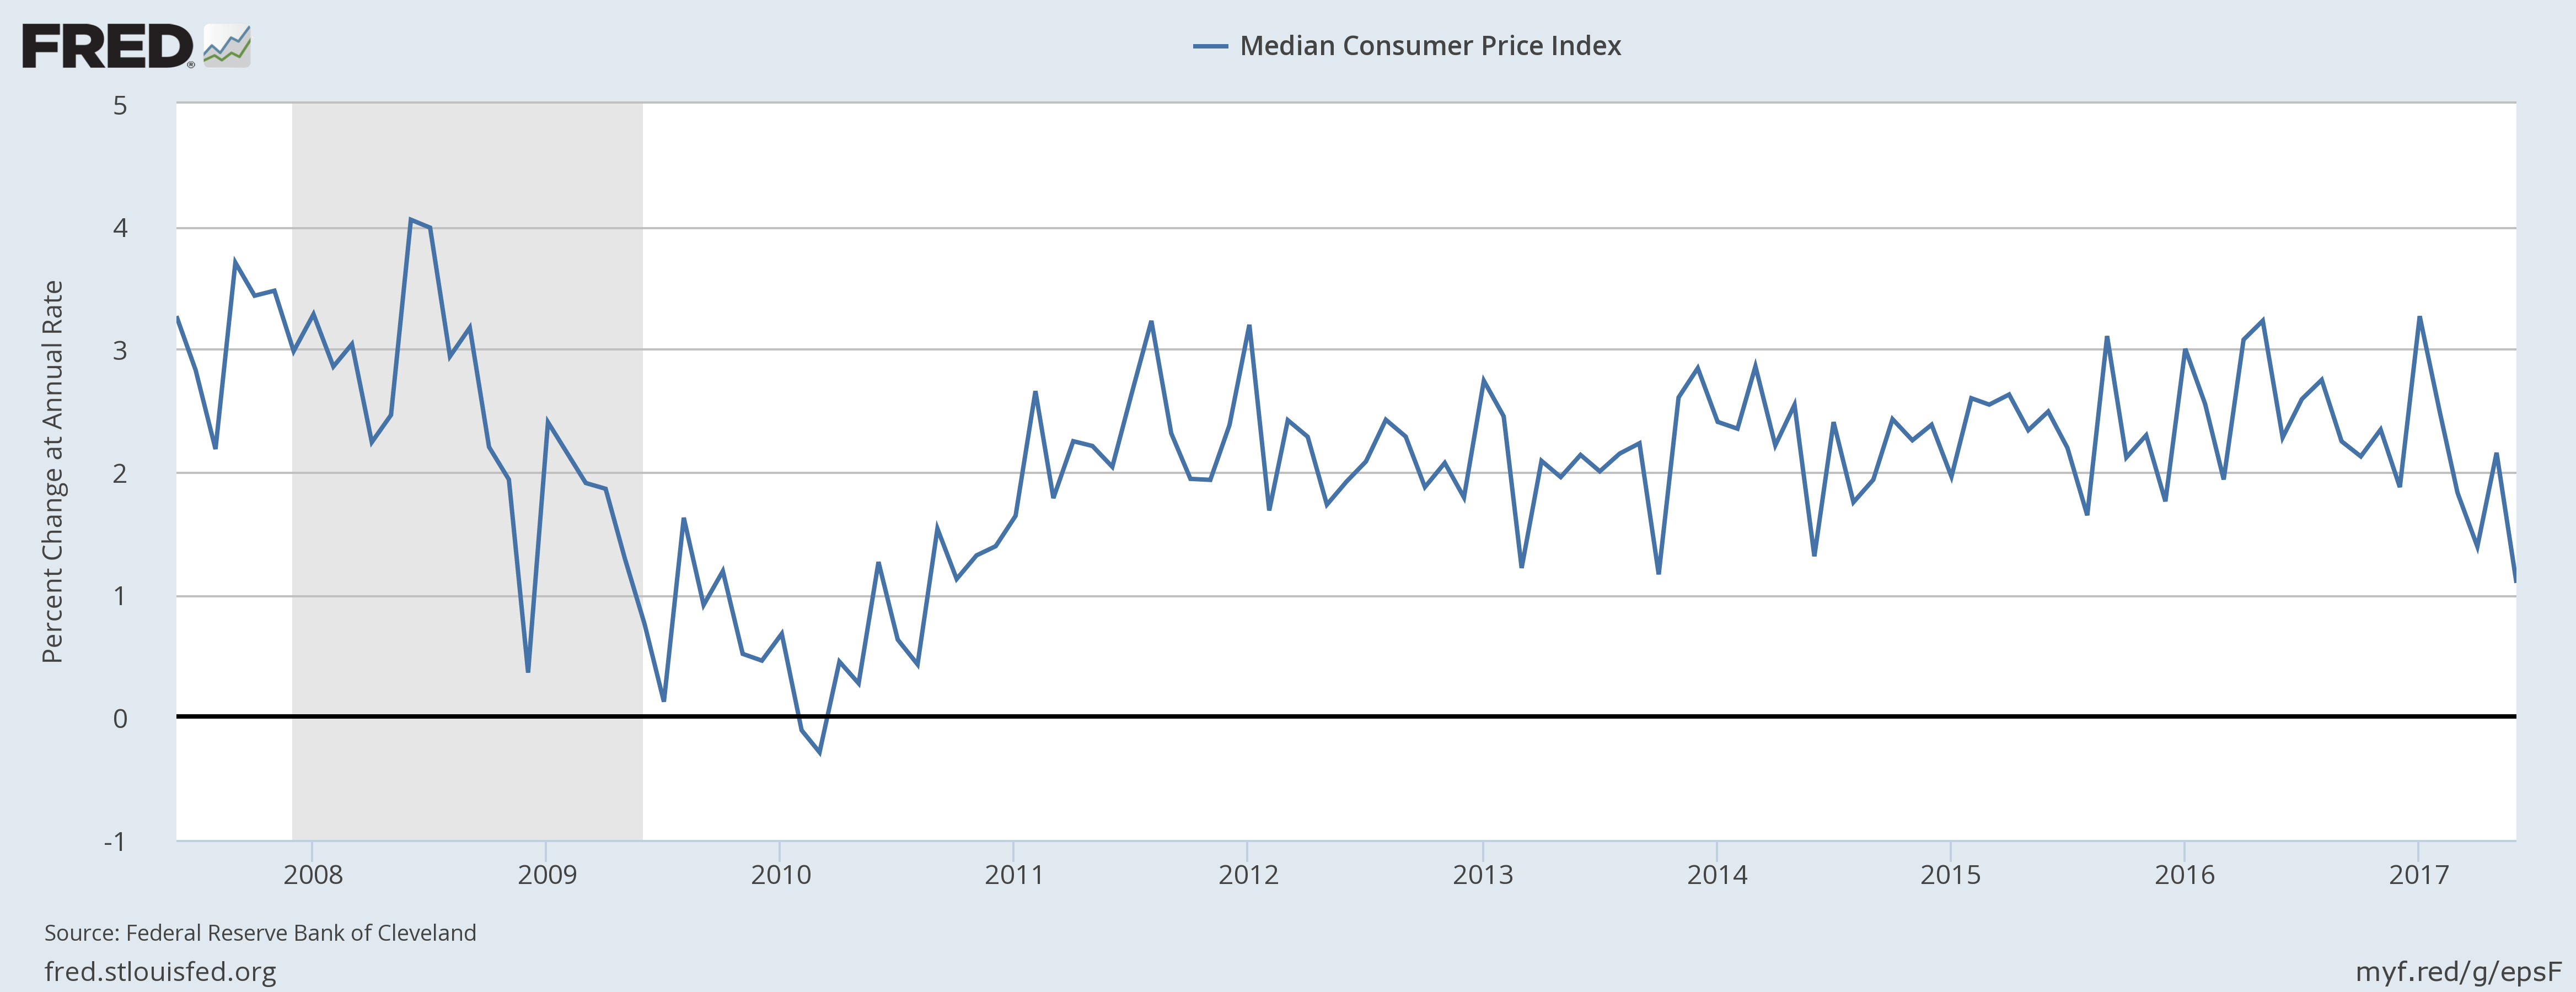 Median Consumer Price Index